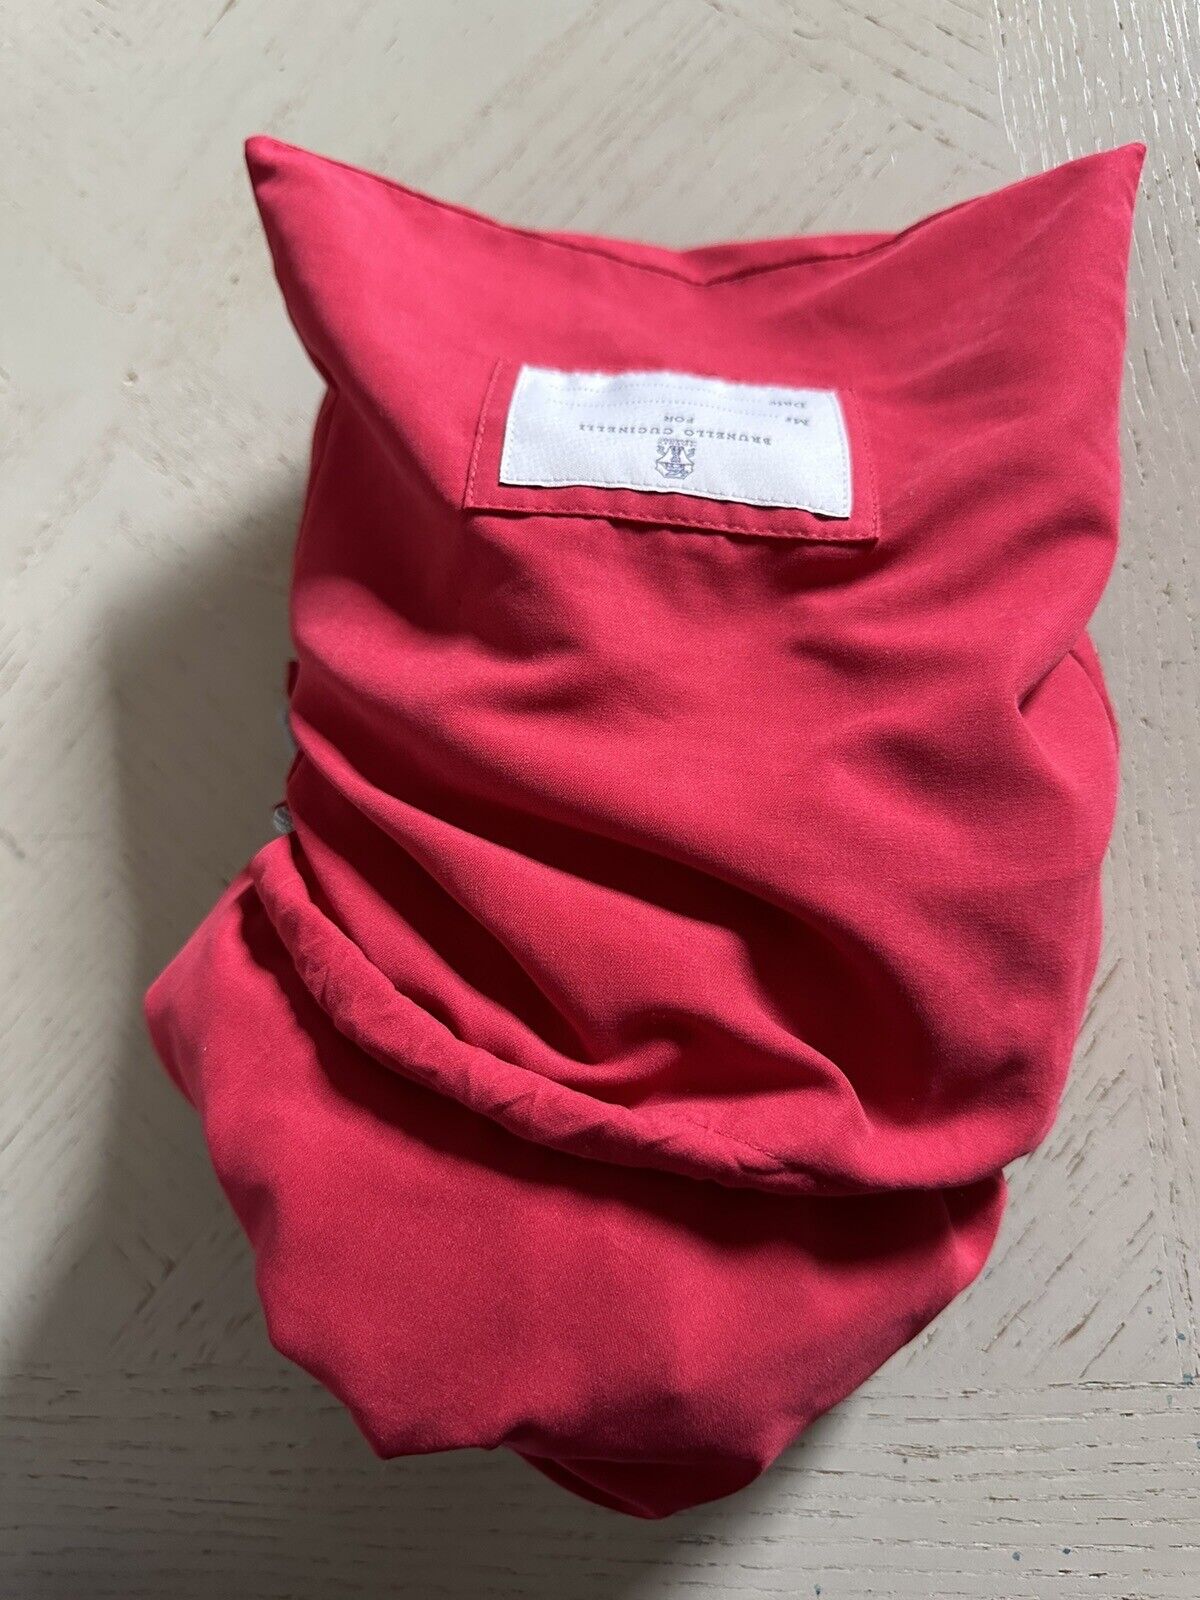 NWT $550 Brunello Cucinelli Мужчины Купальники Короткие Цвета Красный XL Италия